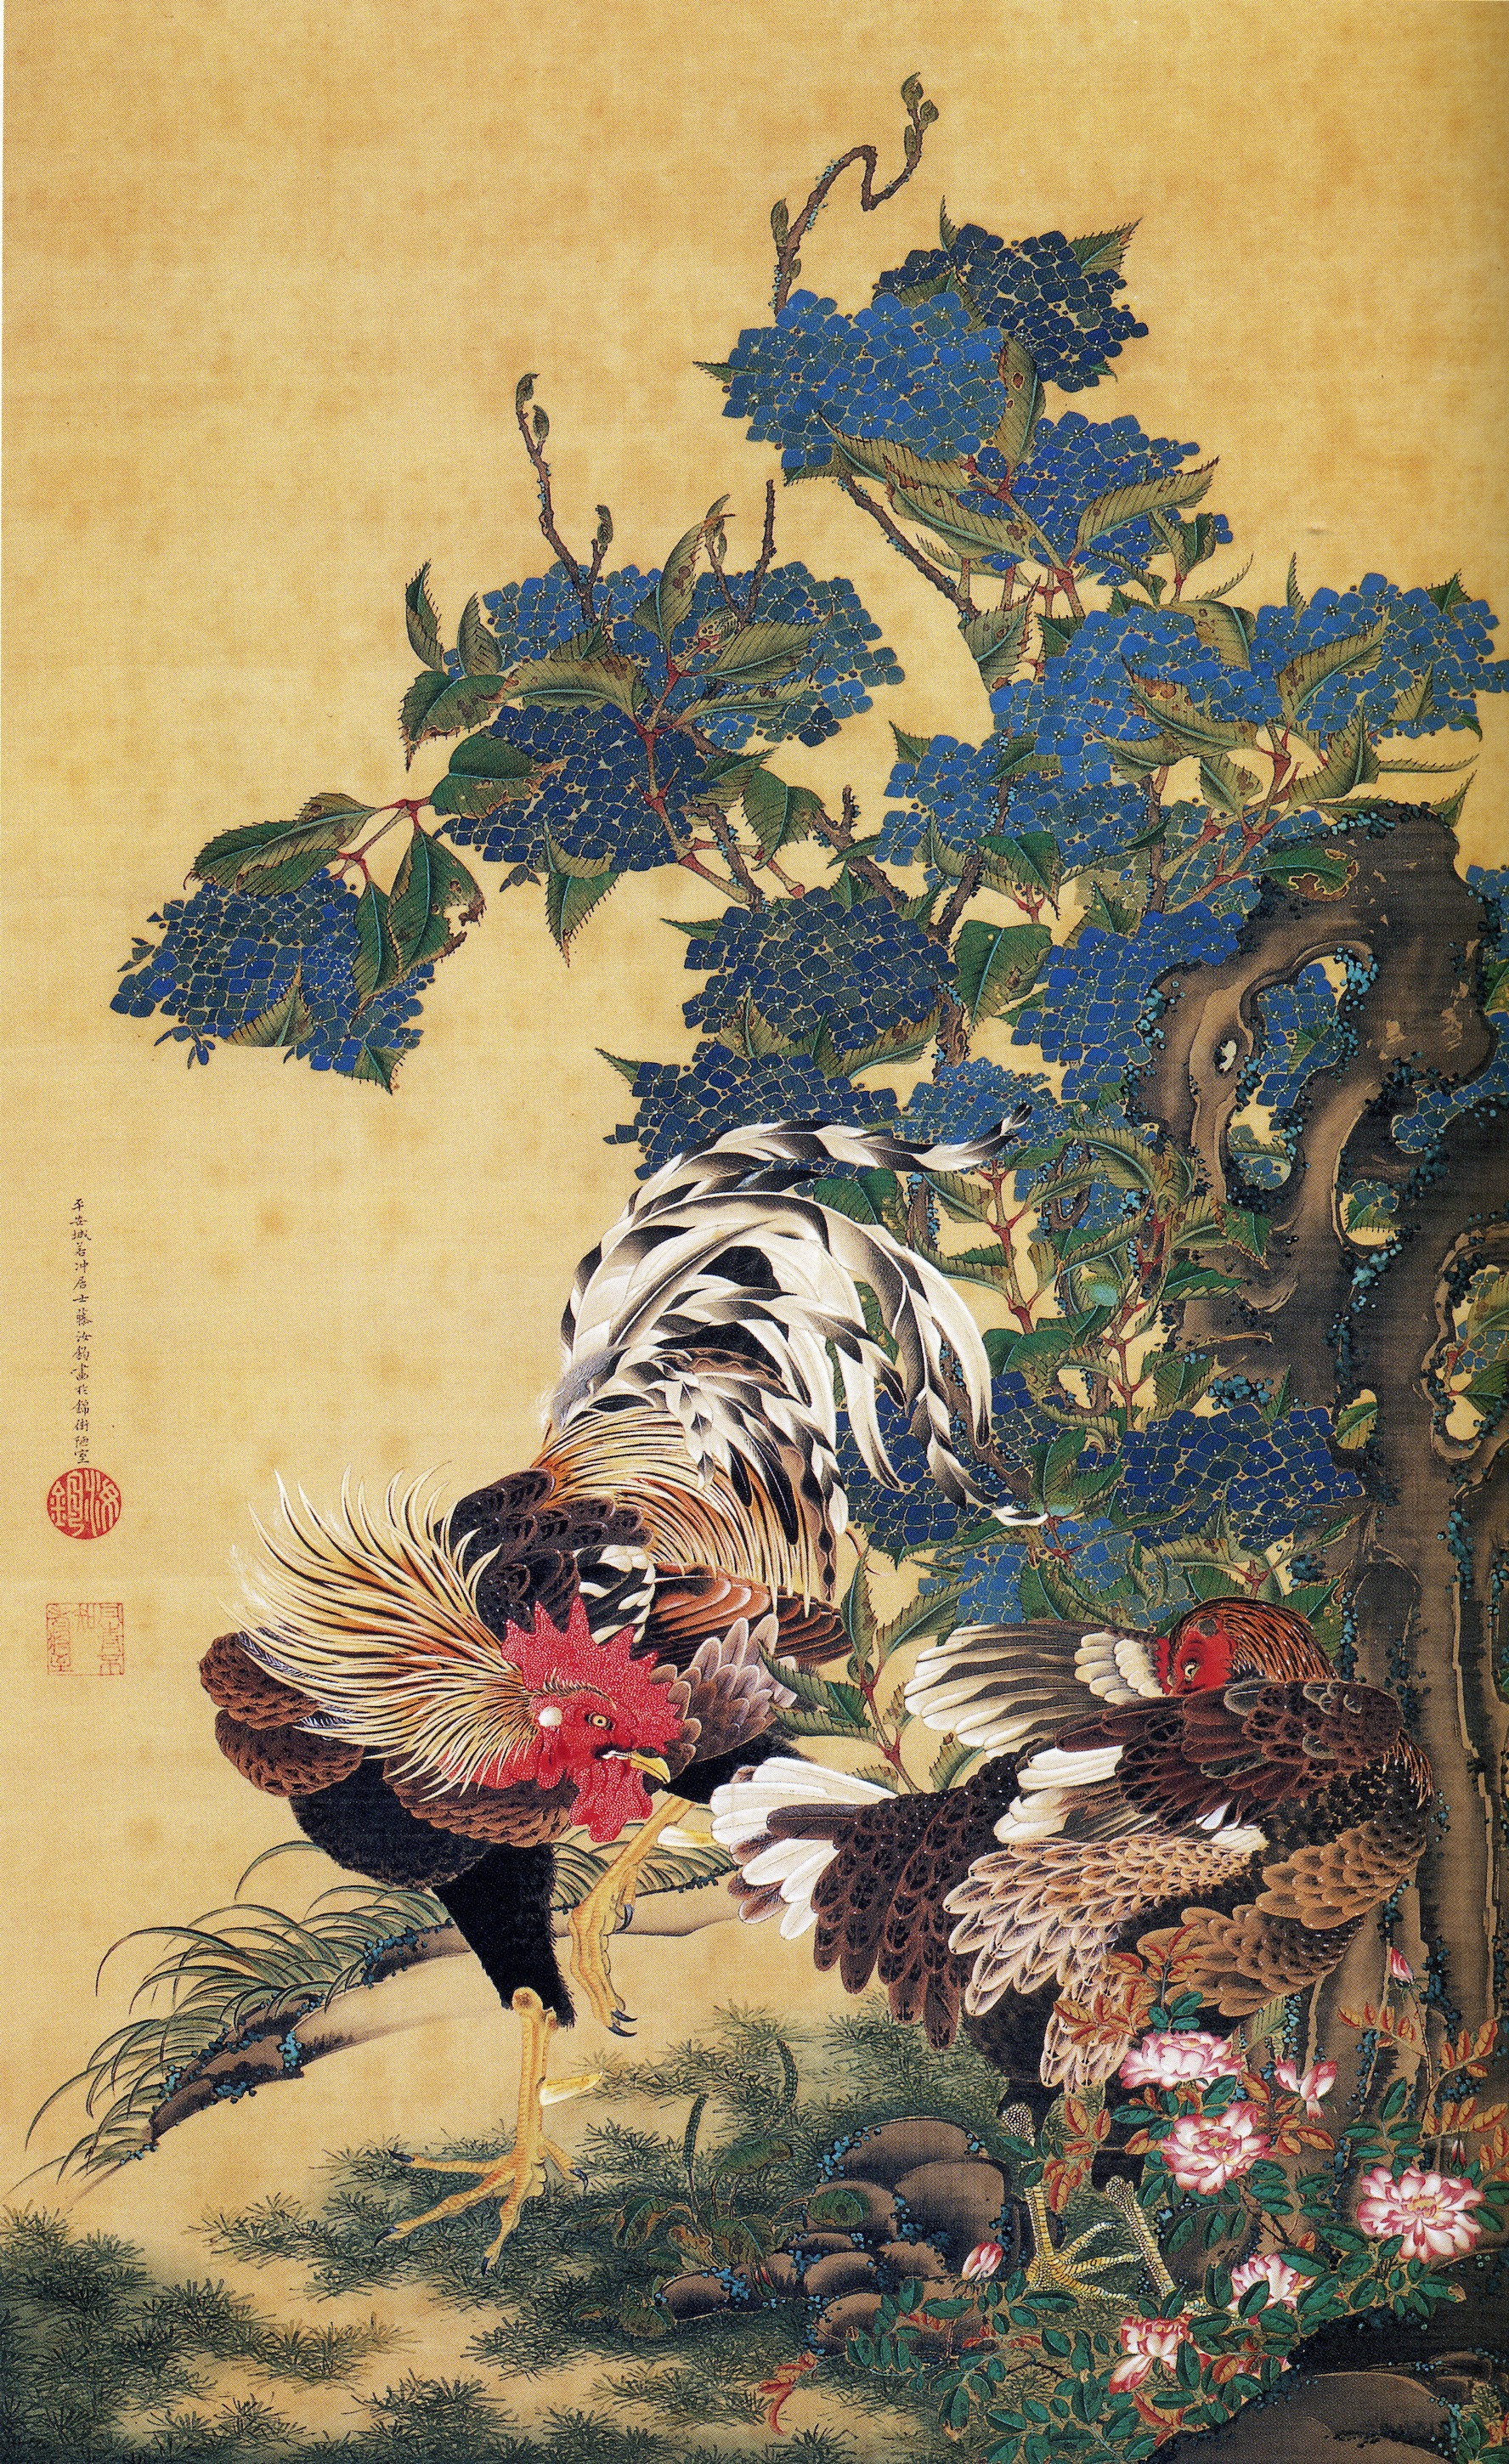 Itō Jakuchū - 2 March 1716 - 27 October 1800